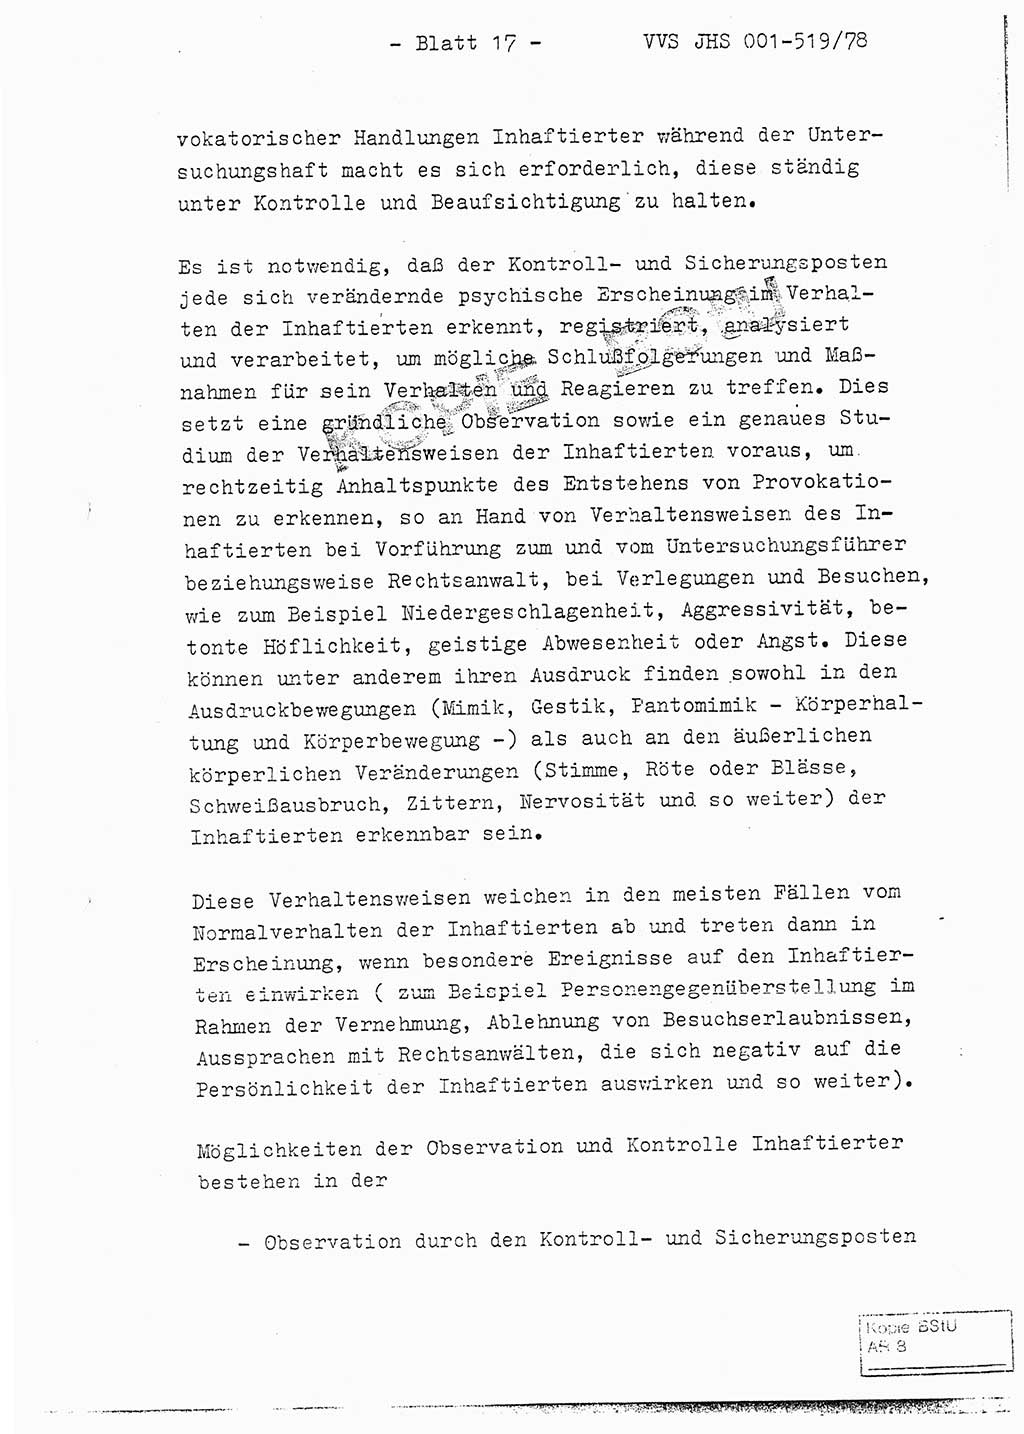 Fachschulabschlußarbeit Hauptmann Alfons Lützelberger (Abt. ⅩⅣ), Ministerium für Staatssicherheit (MfS) [Deutsche Demokratische Republik (DDR)], Juristische Hochschule (JHS), Vertrauliche Verschlußsache (VVS) 001-519/78, Potsdam 1978, Blatt 17 (FS-Abschl.-Arb. MfS DDR JHS VVS 001-519/78 1978, Bl. 17)